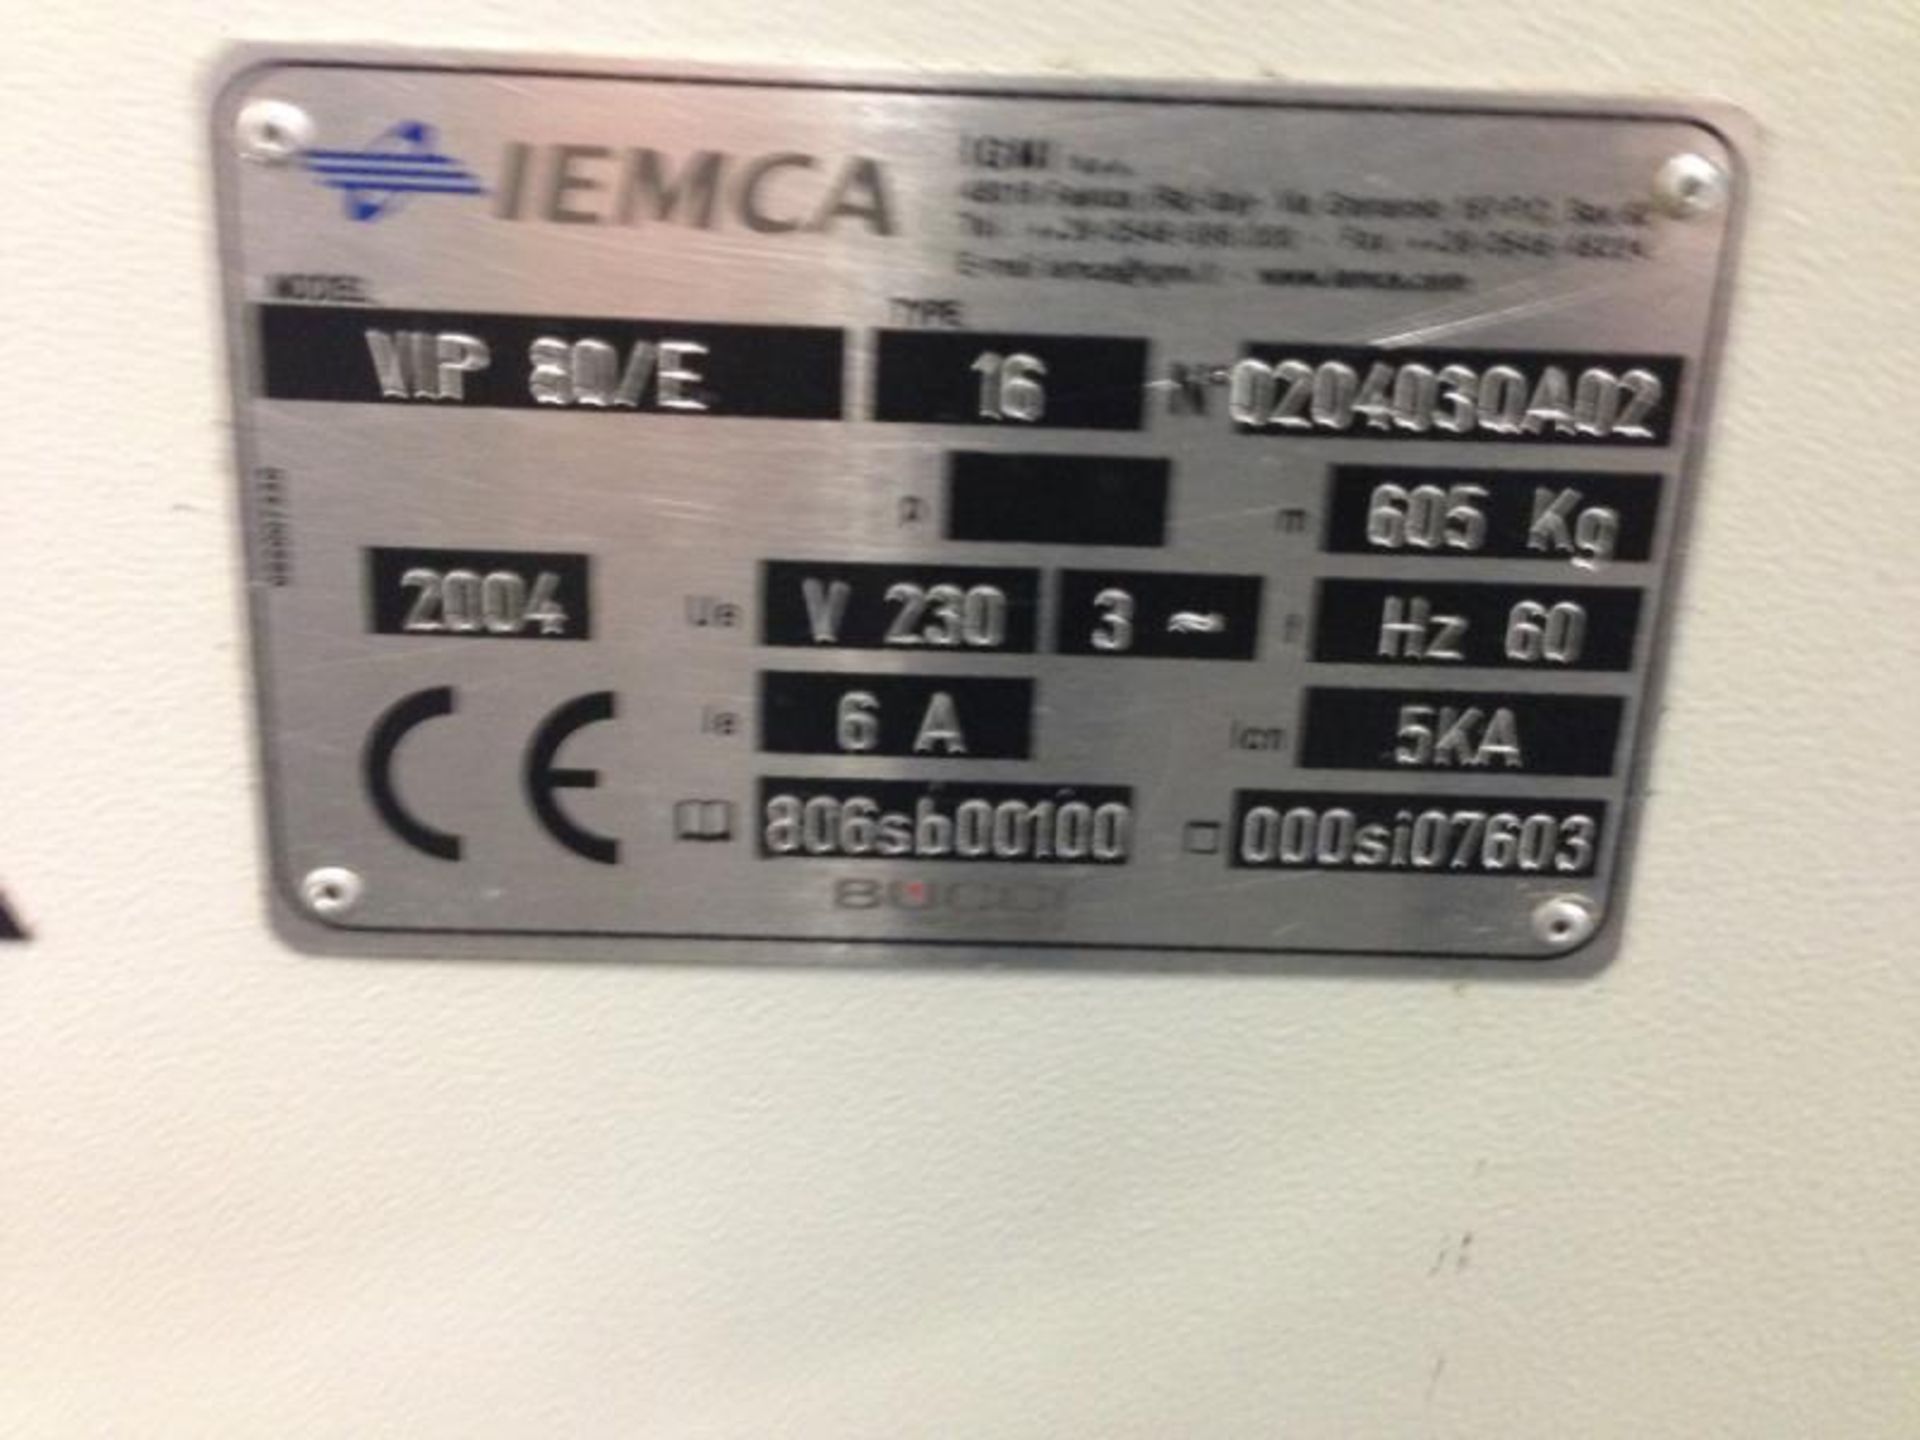 (New 2004) OKUMA # LT-200-M CNC Turning Center - Image 4 of 6